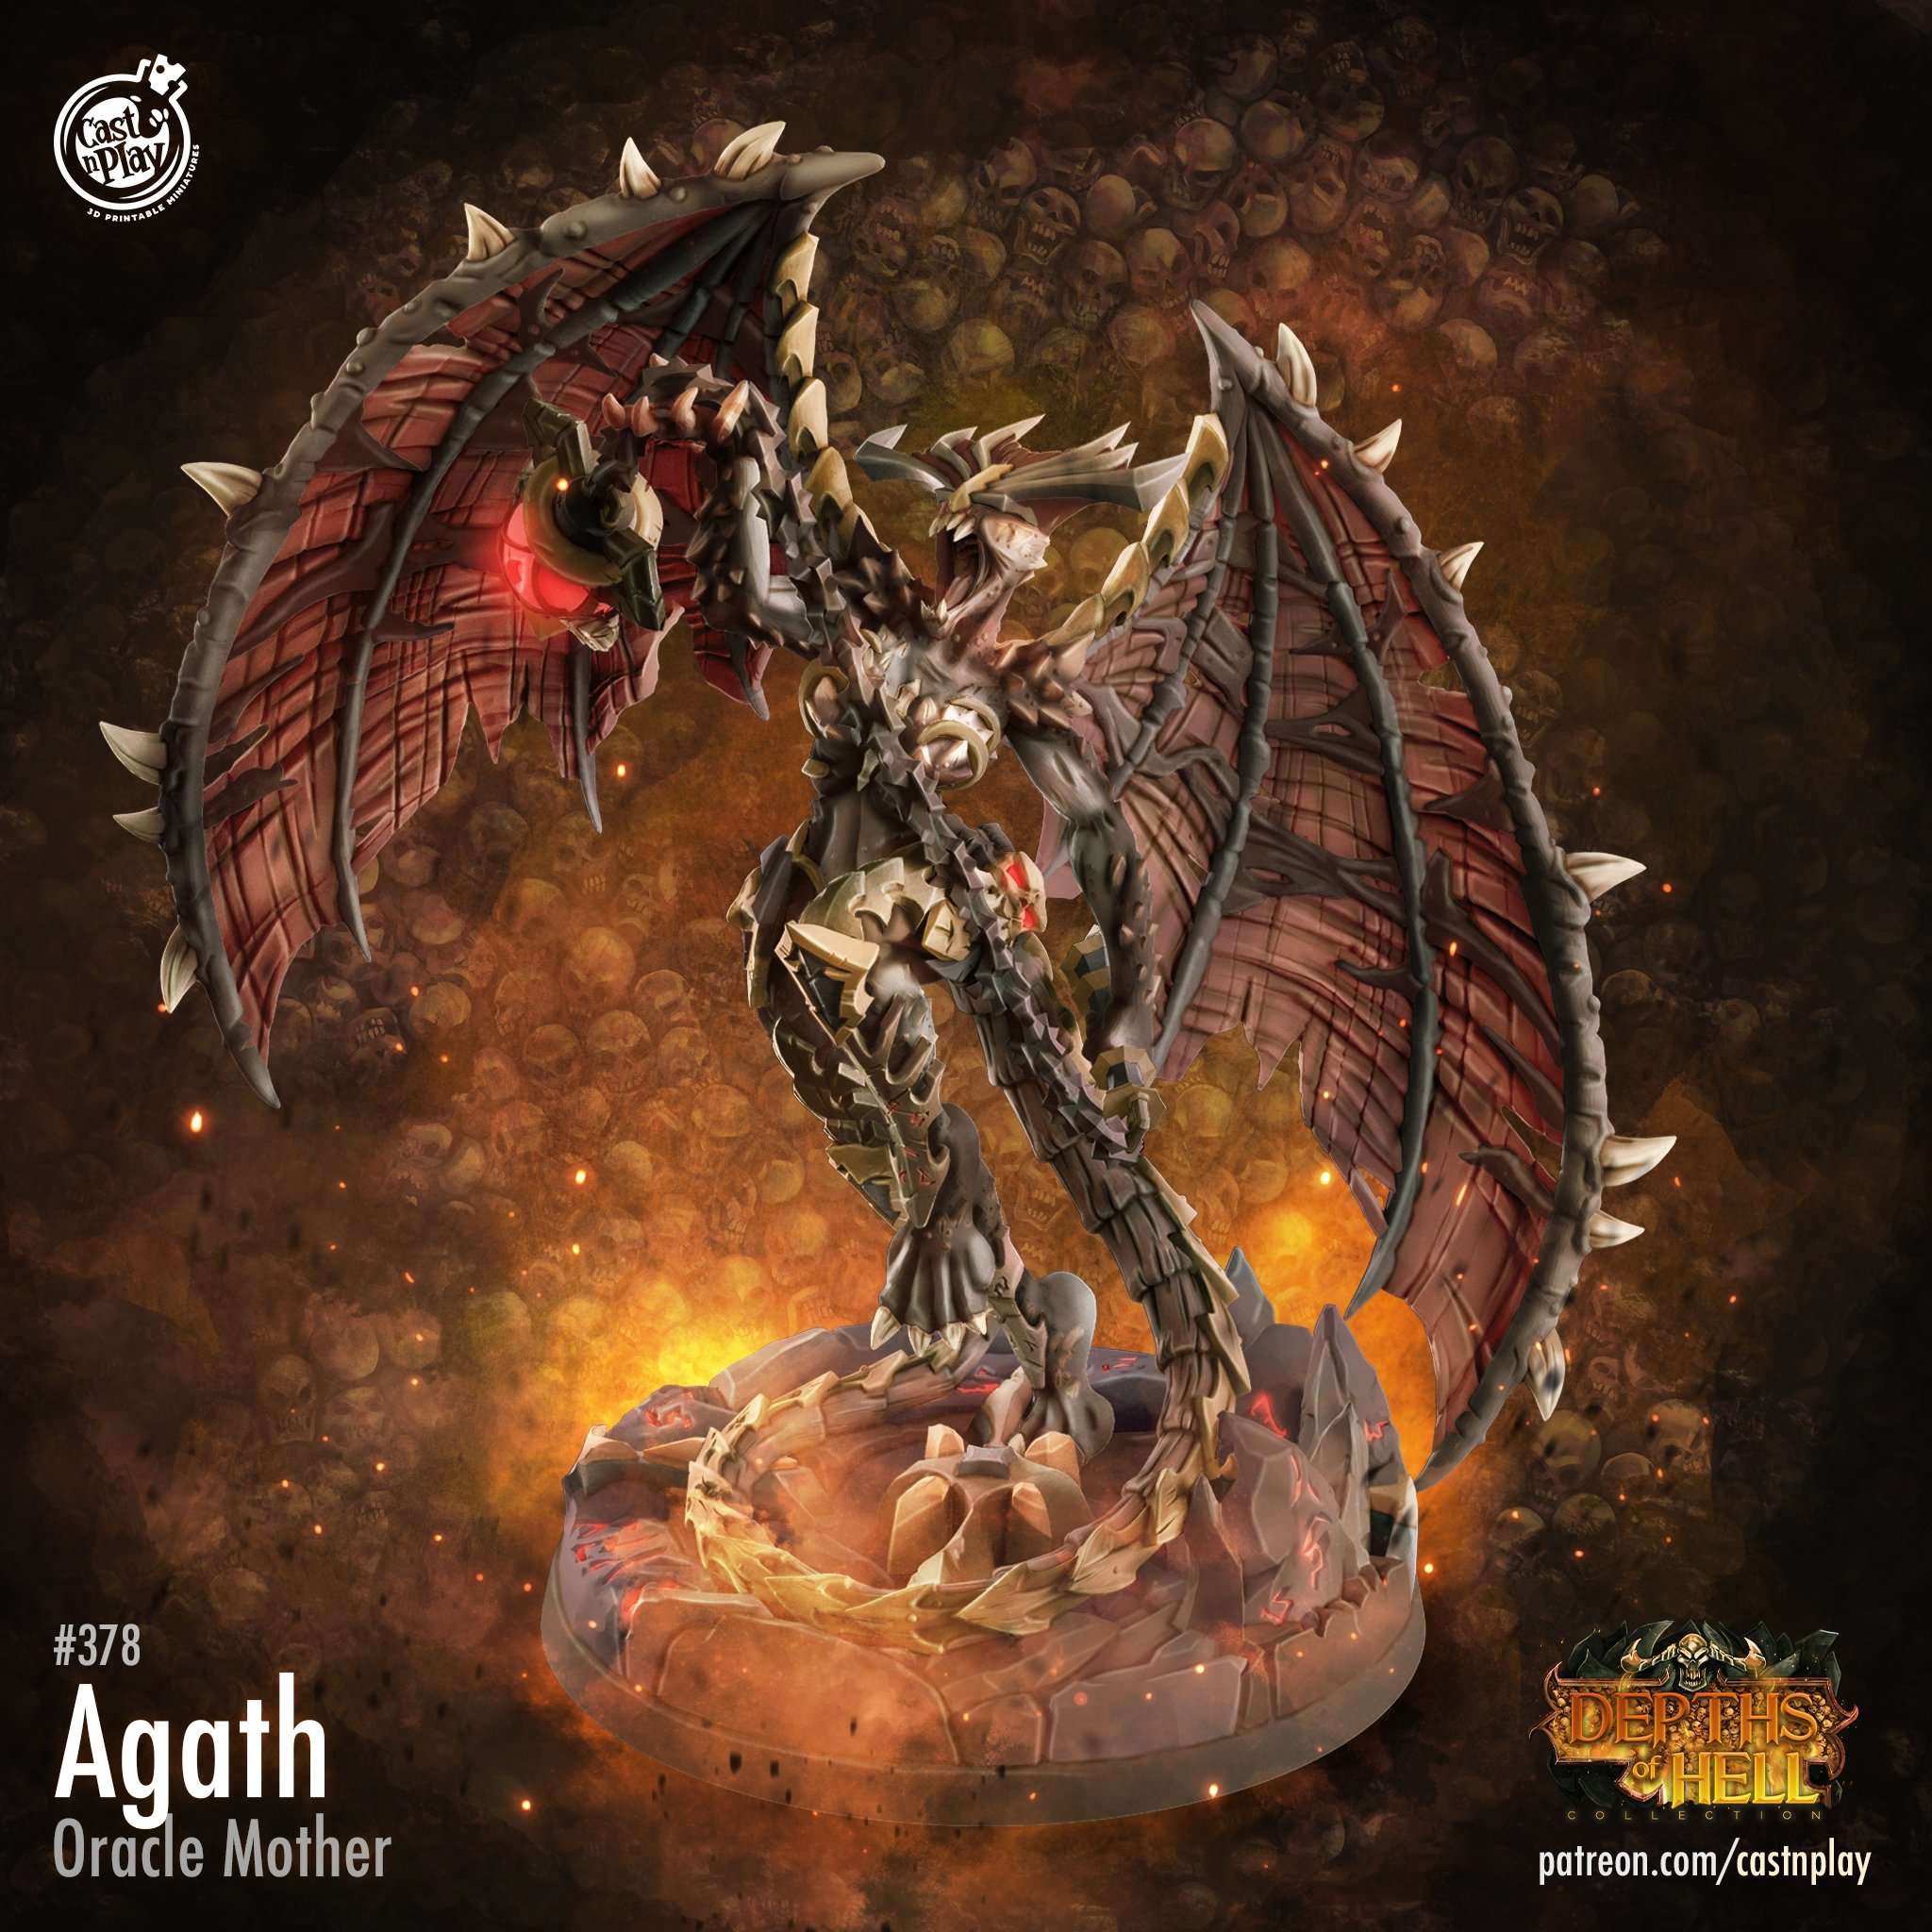 Agath - The Printable Dragon